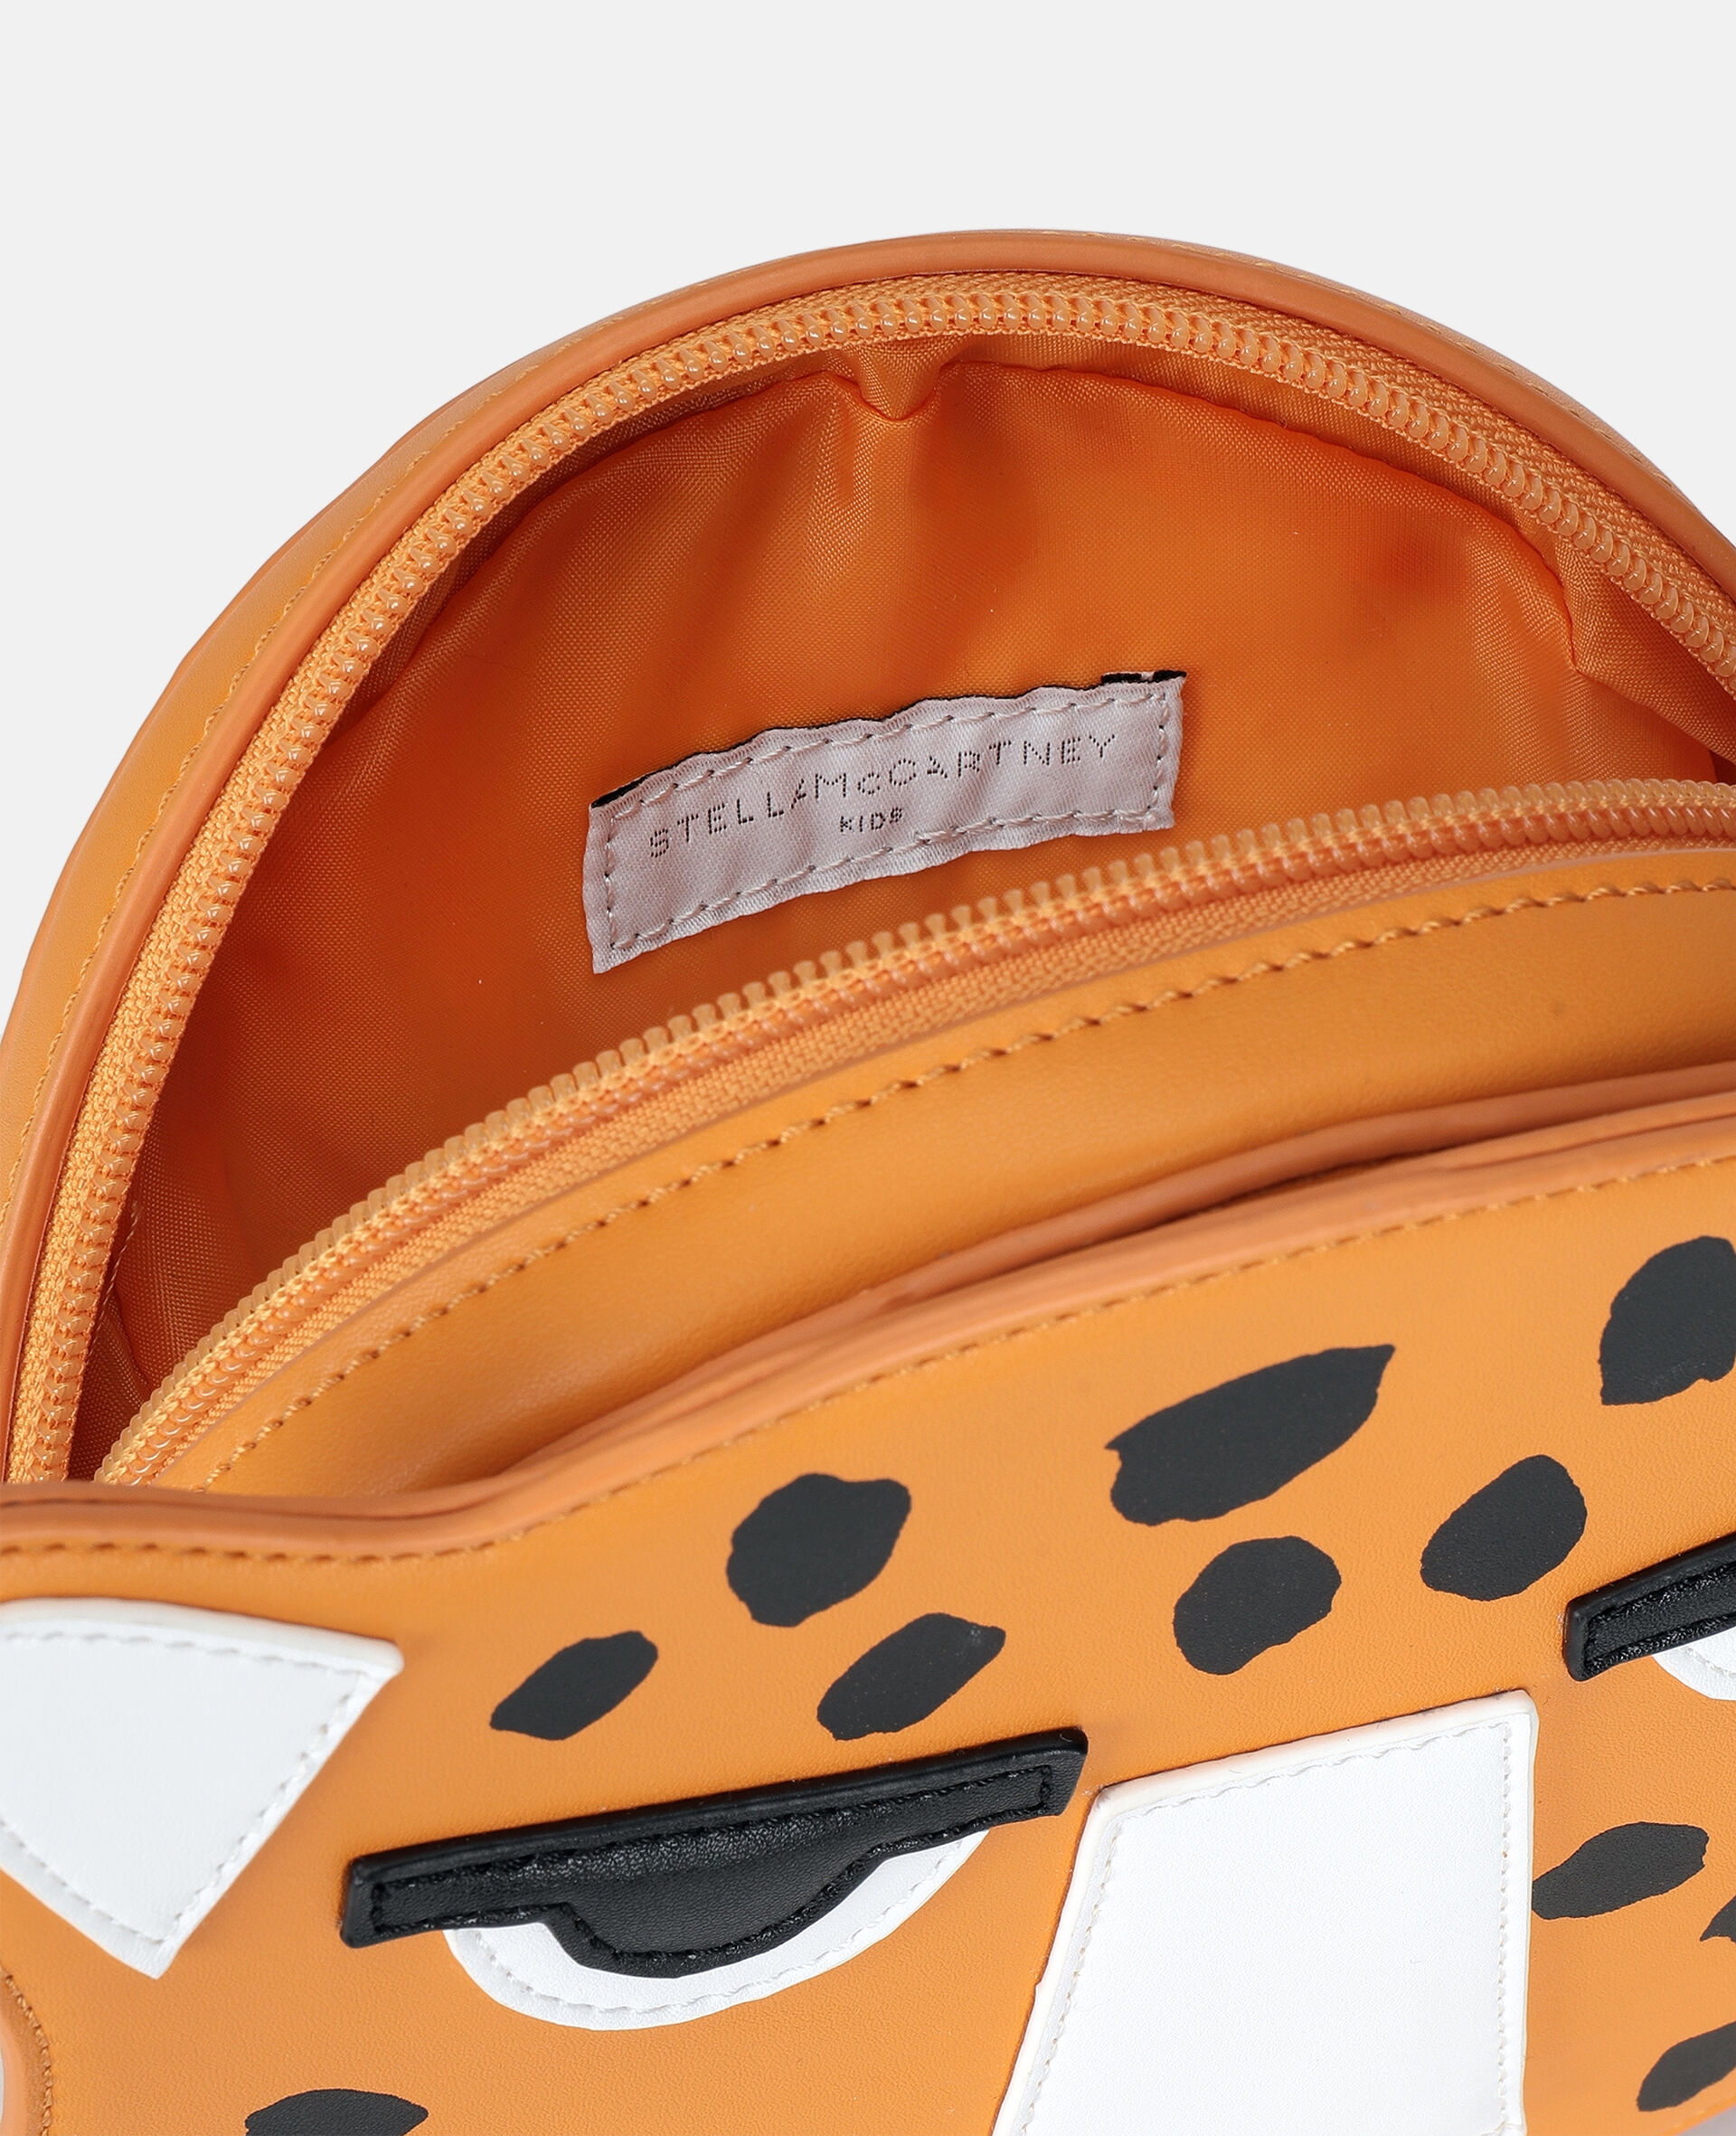 Cheetah Shoulder Bag -Orange-large image number 2